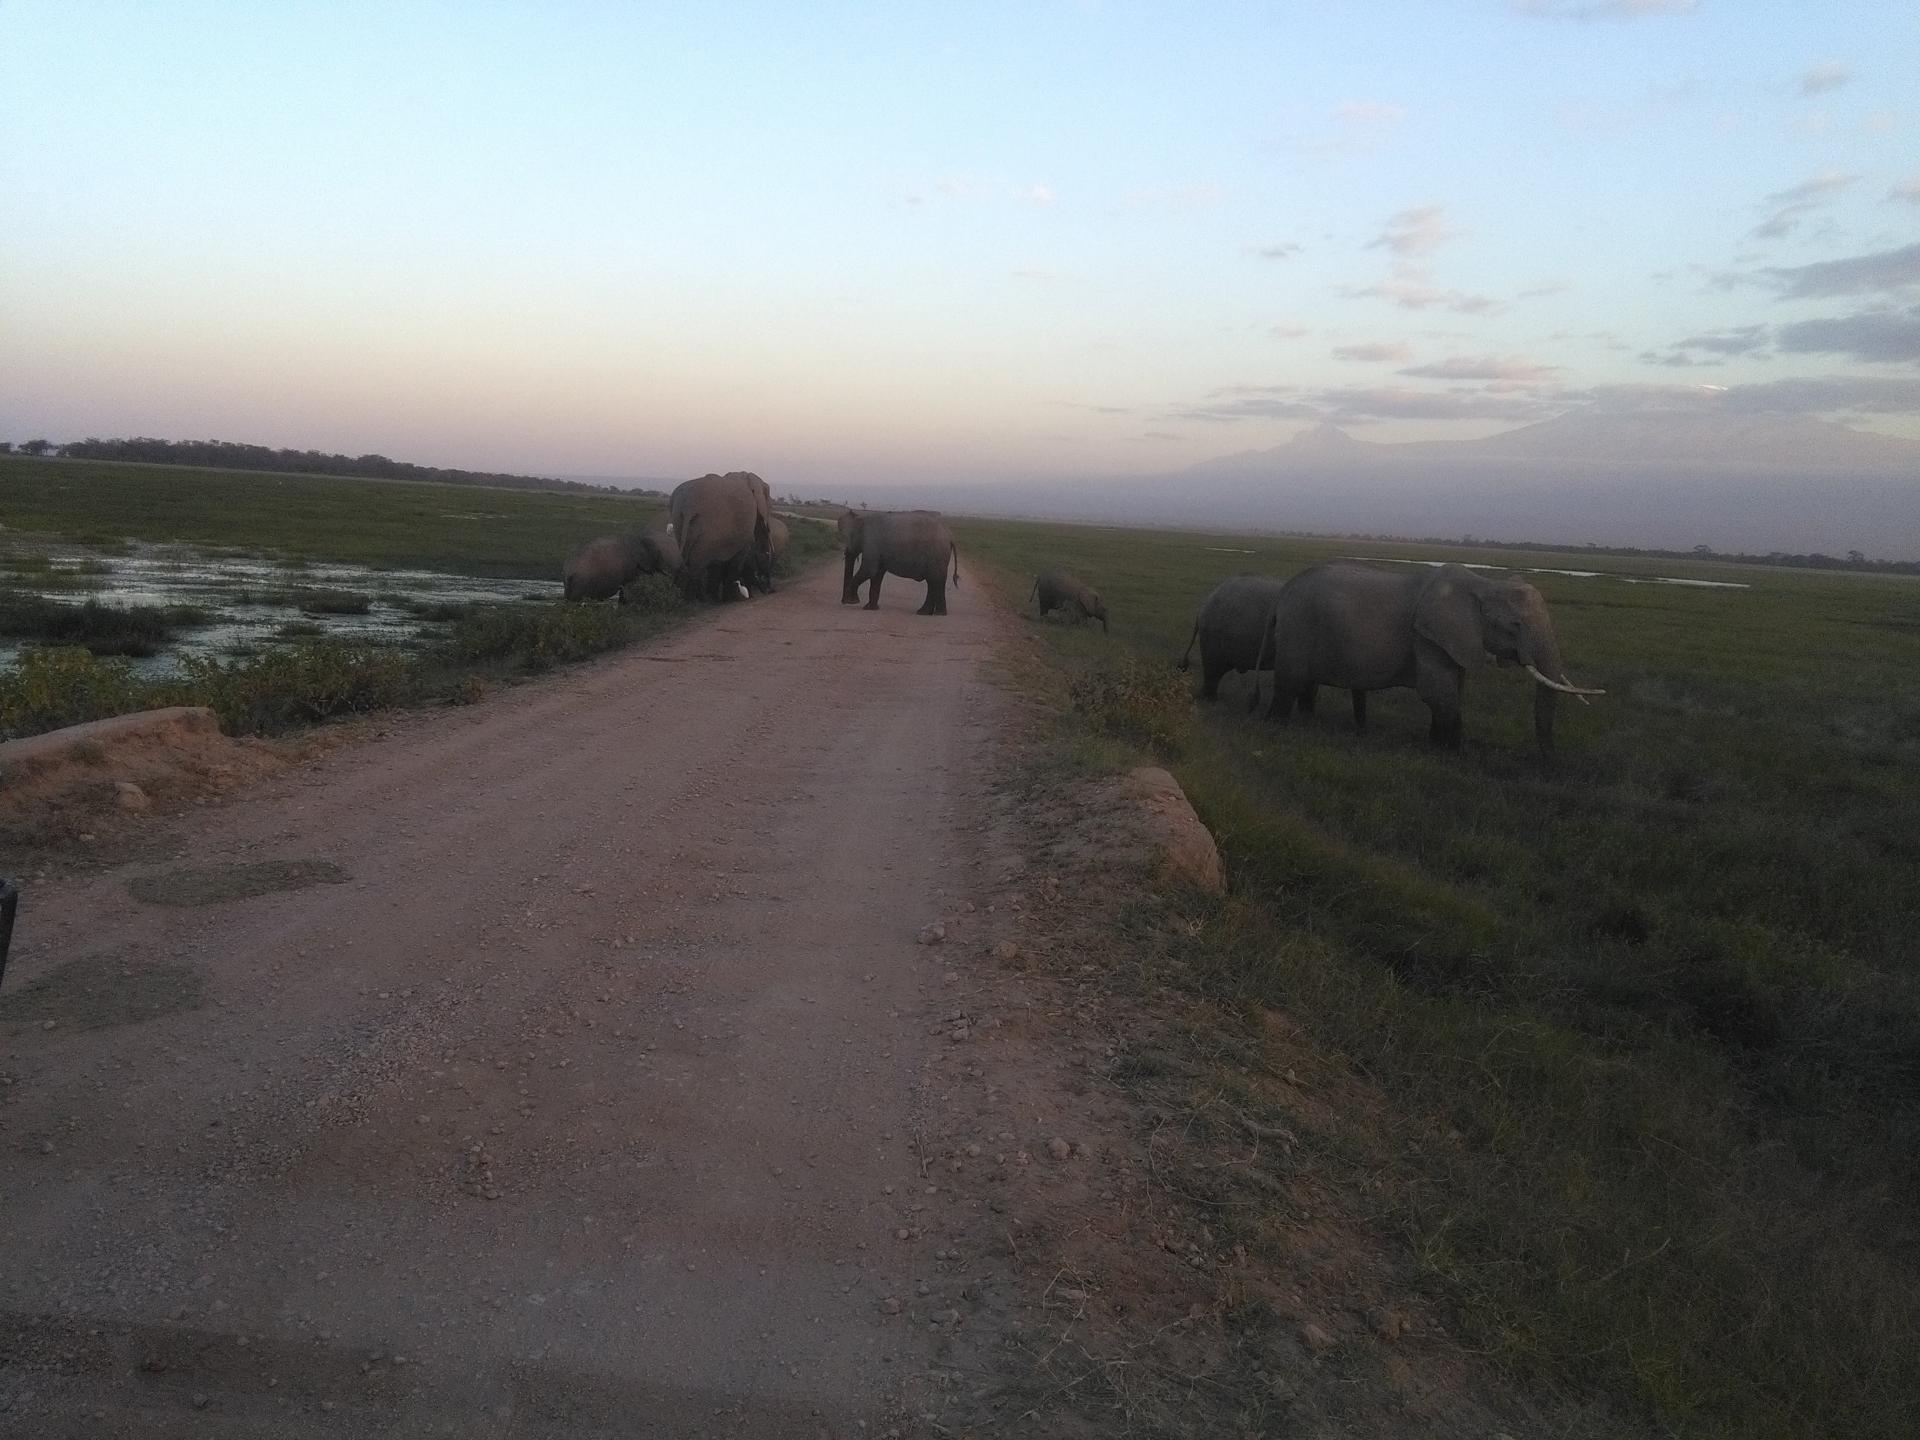 Amboseli herd of elephants, Epic Kenya Adventure Safaris, Active Adventures, YHA Kenya Travel, Kenya Budget Camping,Tours And Safaris, Safari Bookings.